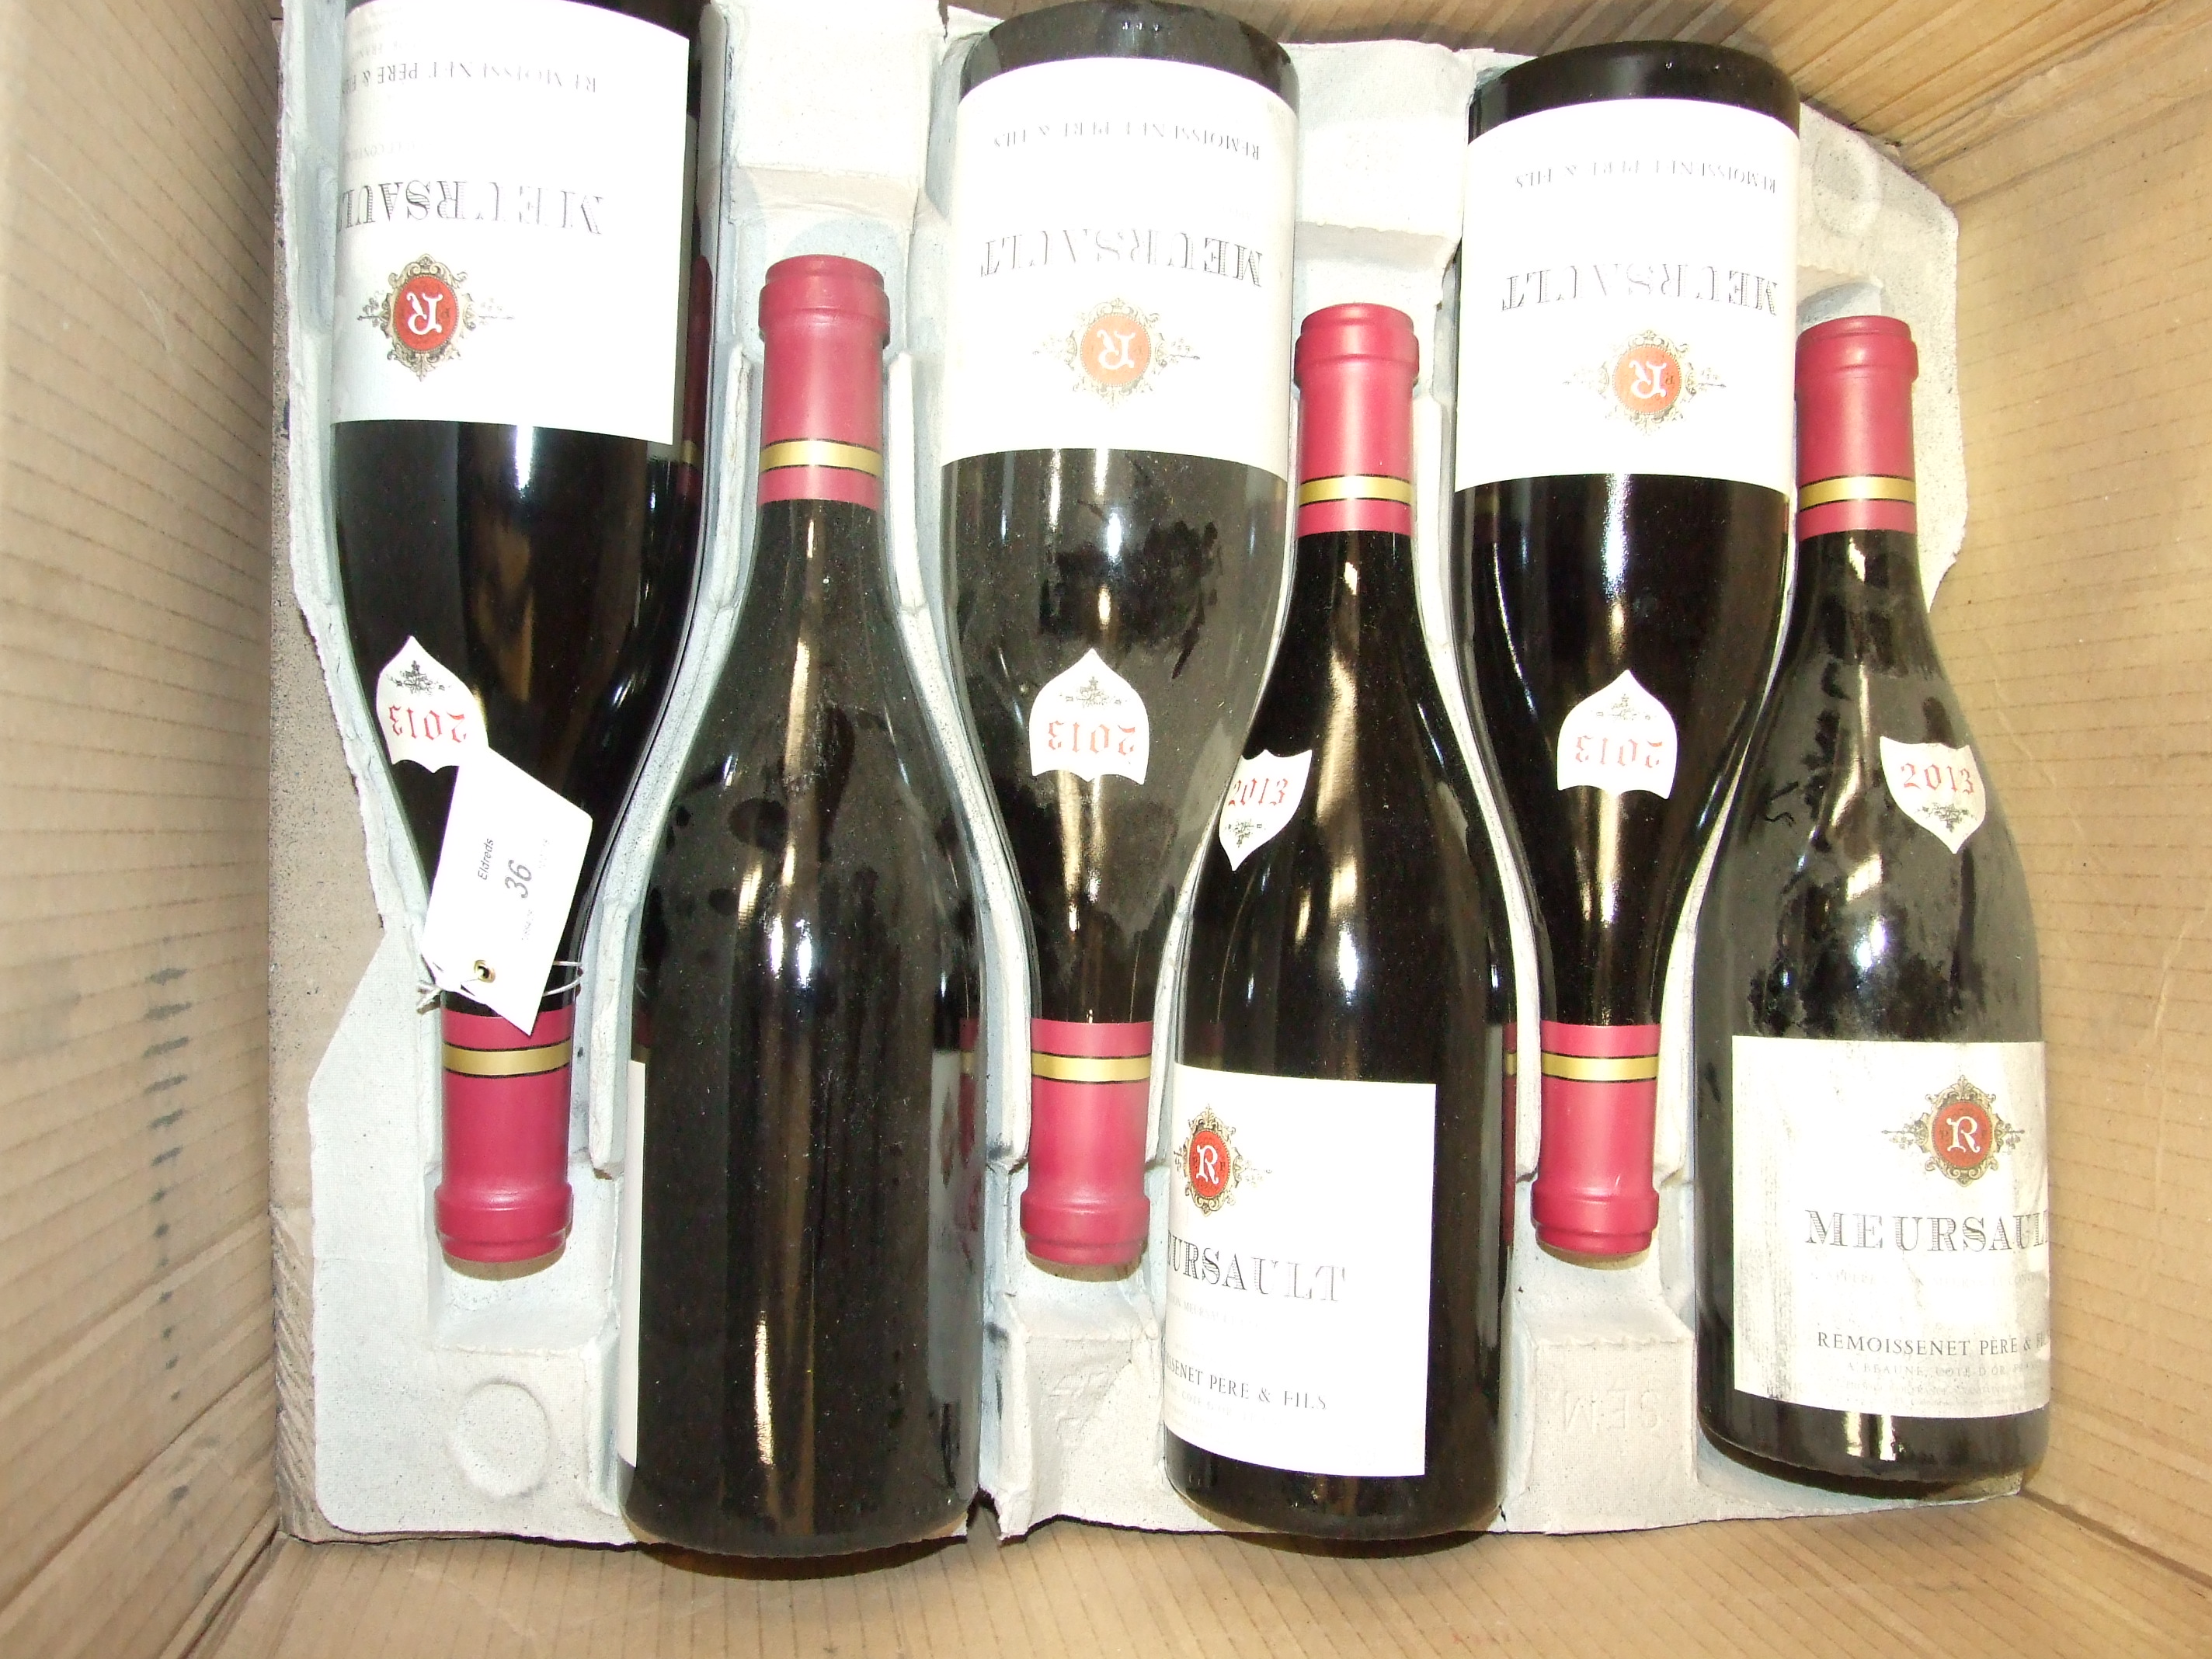 Meursault Rouge 2013, Remoissenet Pere et Fils, 6 bottles.